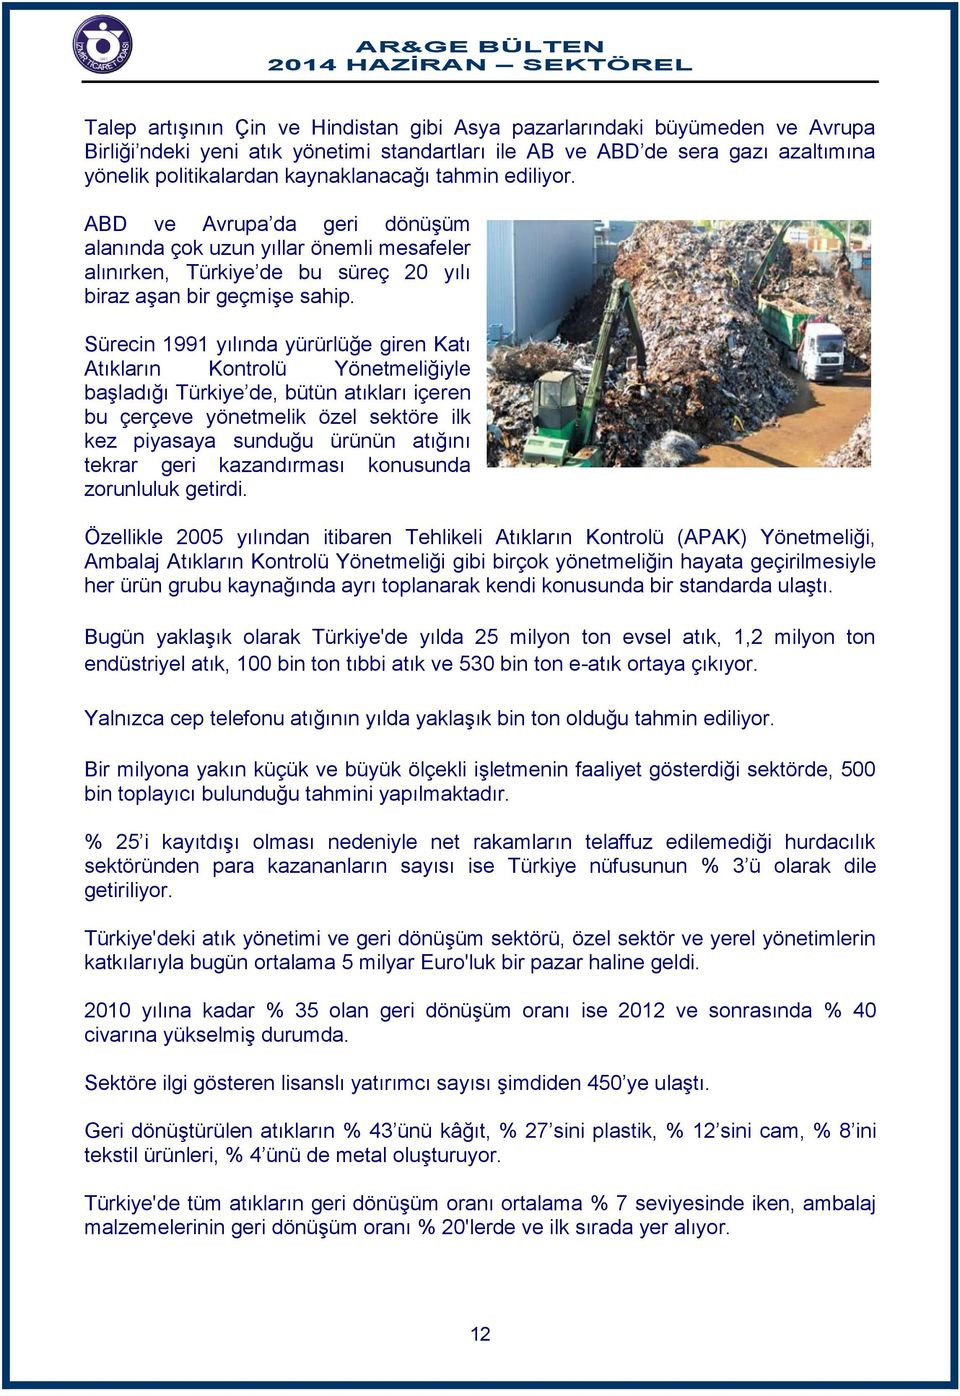 Sürecin 1991 yılında yürürlüğe giren Katı Atıkların Kontrolü Yönetmeliğiyle başladığı Türkiye de, bütün atıkları içeren bu çerçeve yönetmelik özel sektöre ilk kez piyasaya sunduğu ürünün atığını